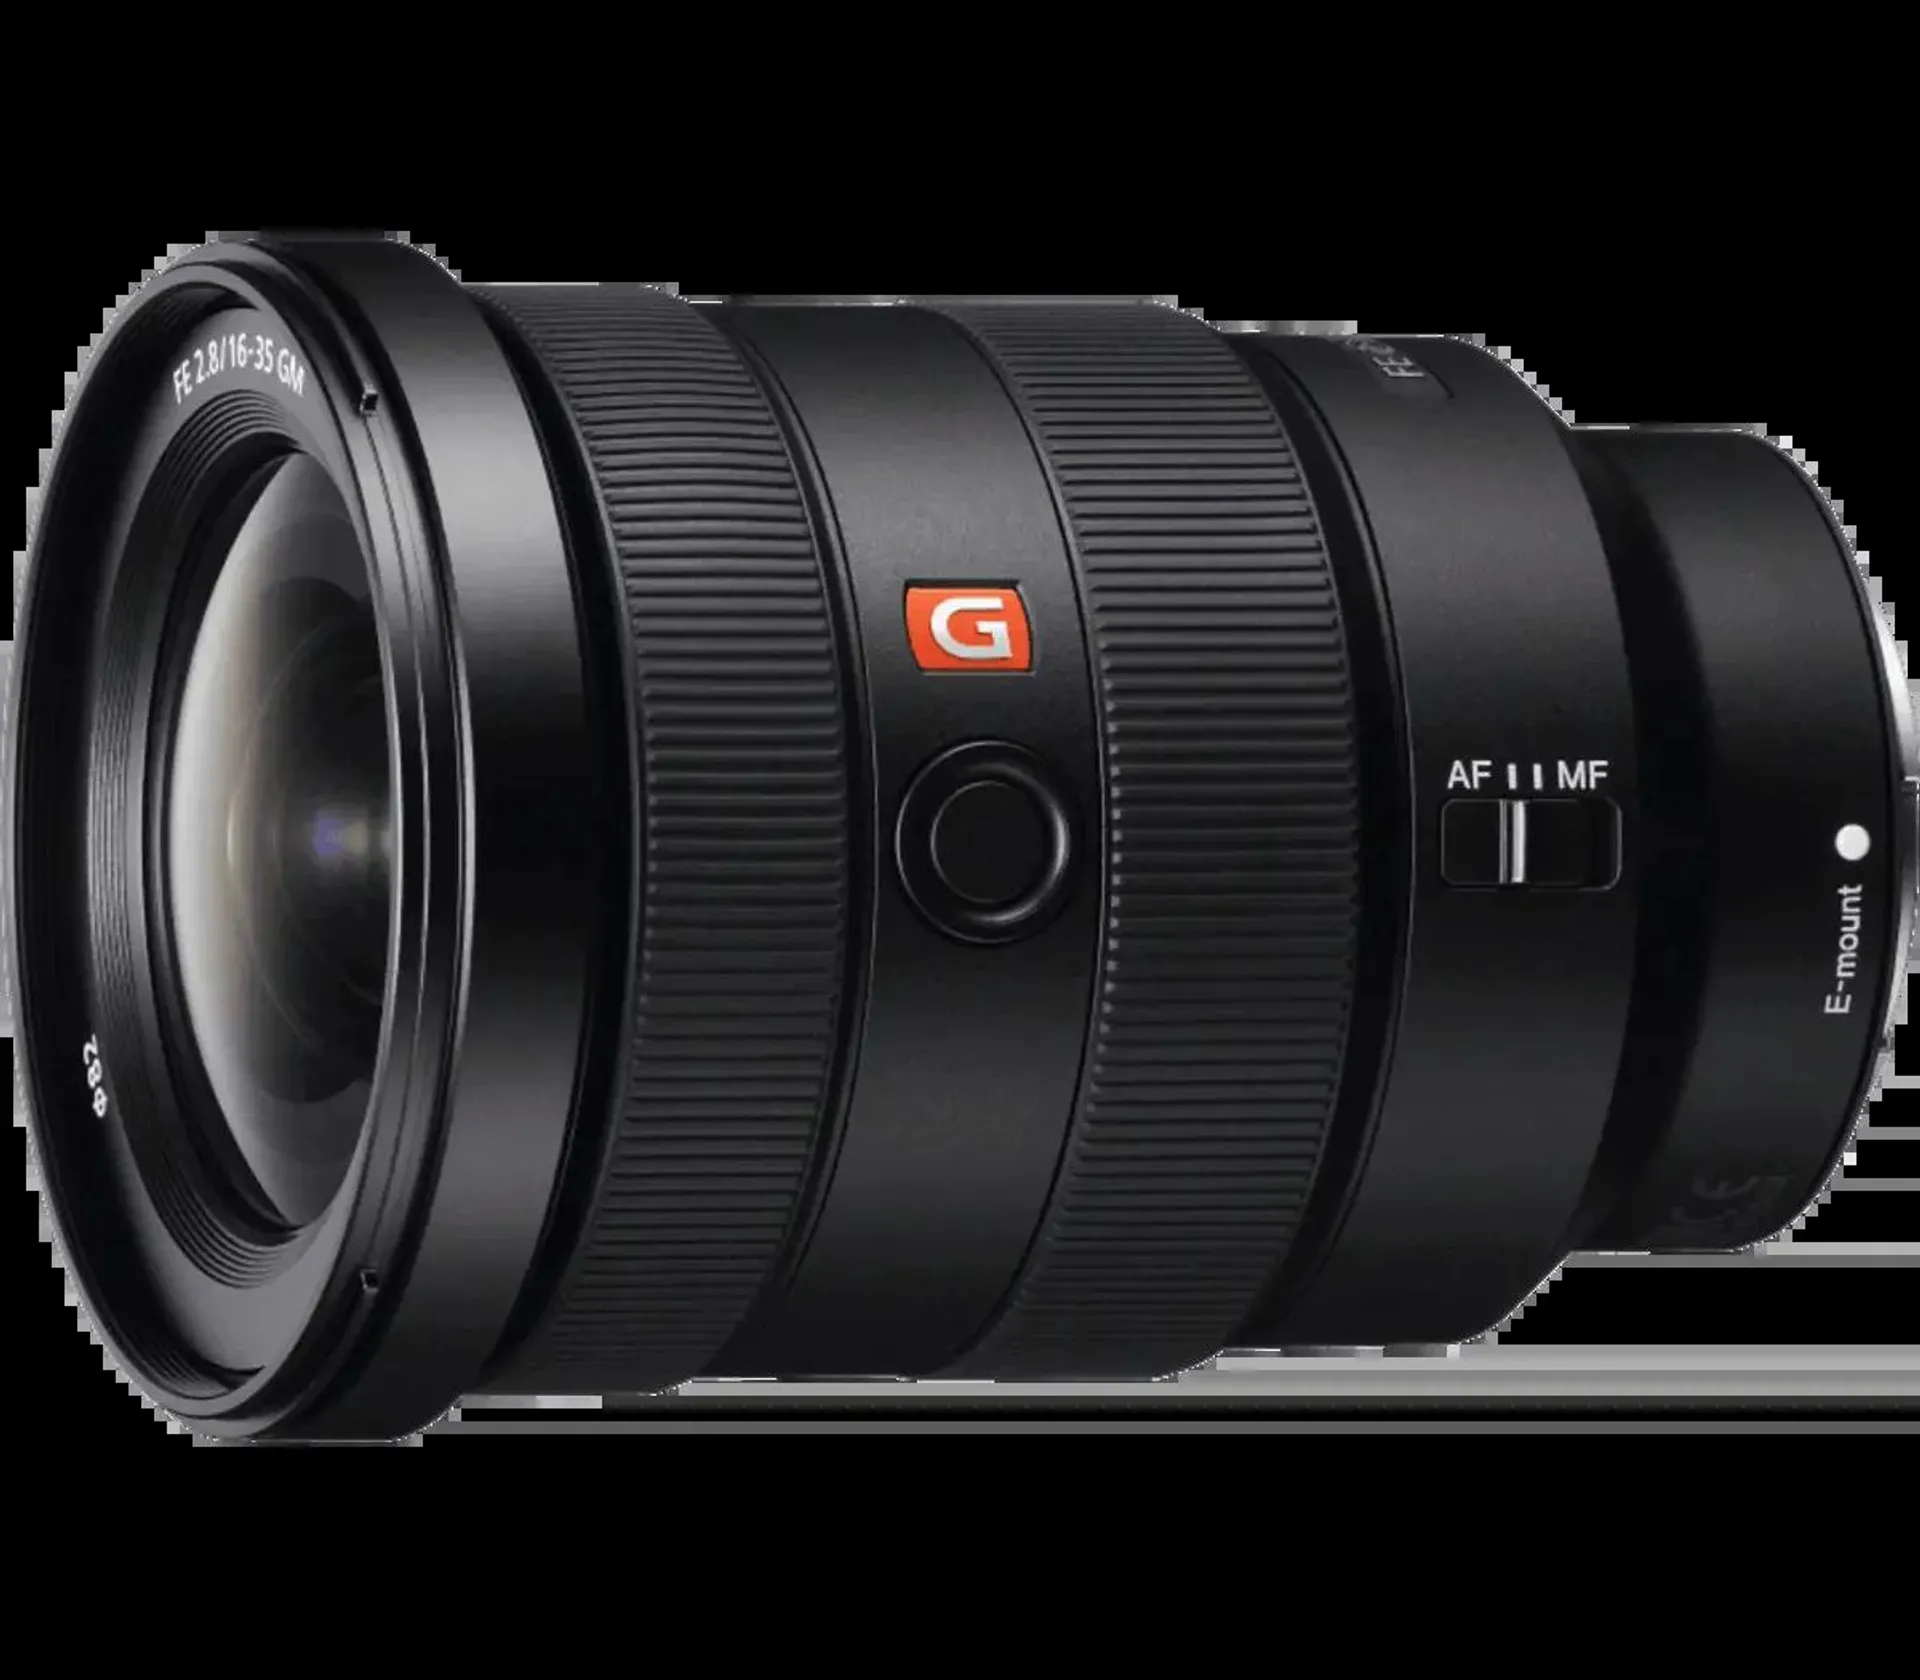 FE 16-35mm F2.8 GM Full-frame Wide-angle Zoom G Master Lens